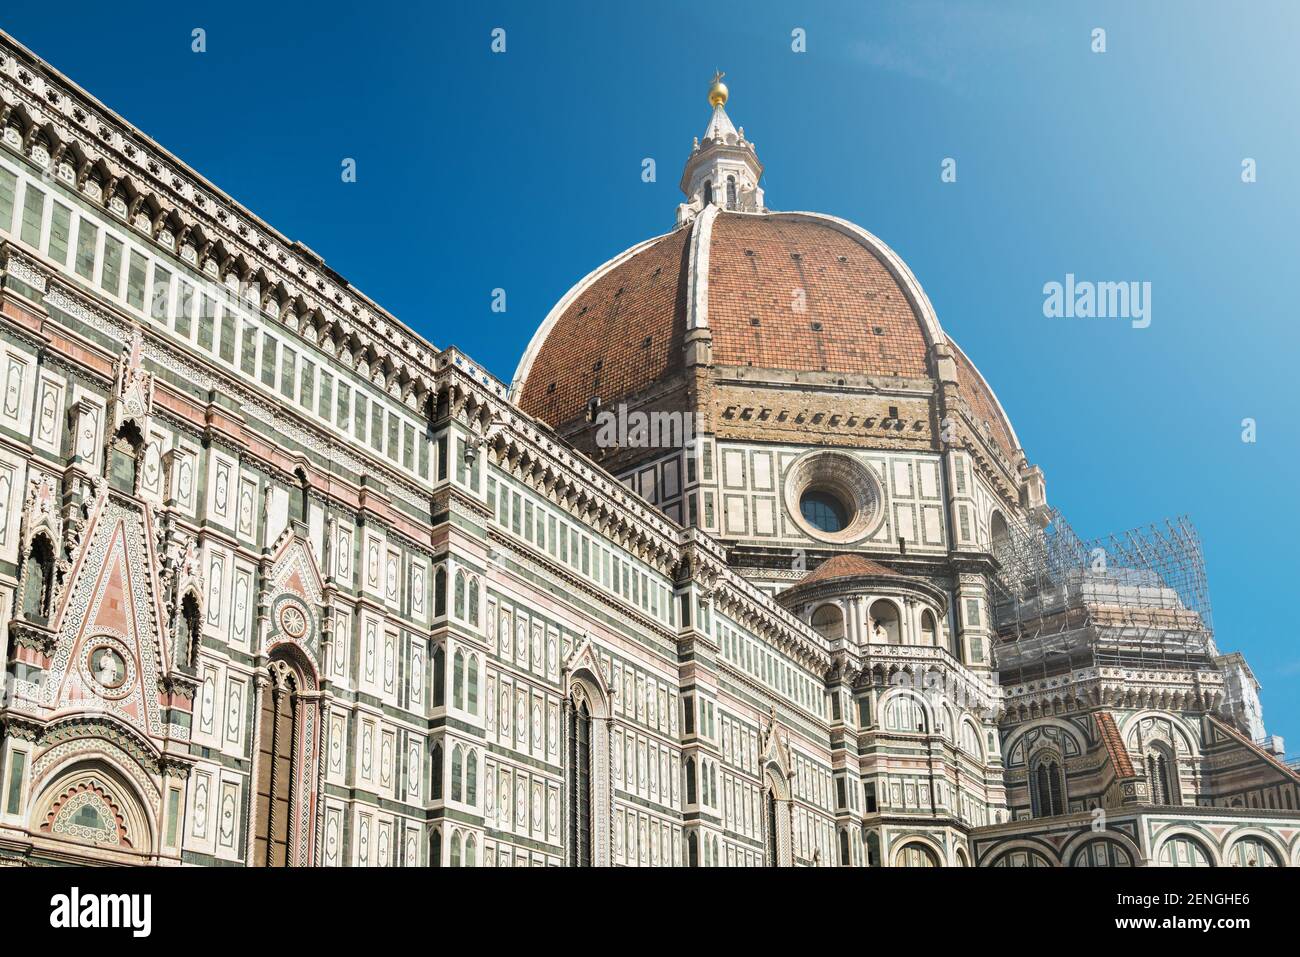 La cathédrale de Florence - la principale église de Florence, en Italie, est classée au patrimoine mondial de l'UNESCO, située dans le centre historique de Florence et est importante Banque D'Images